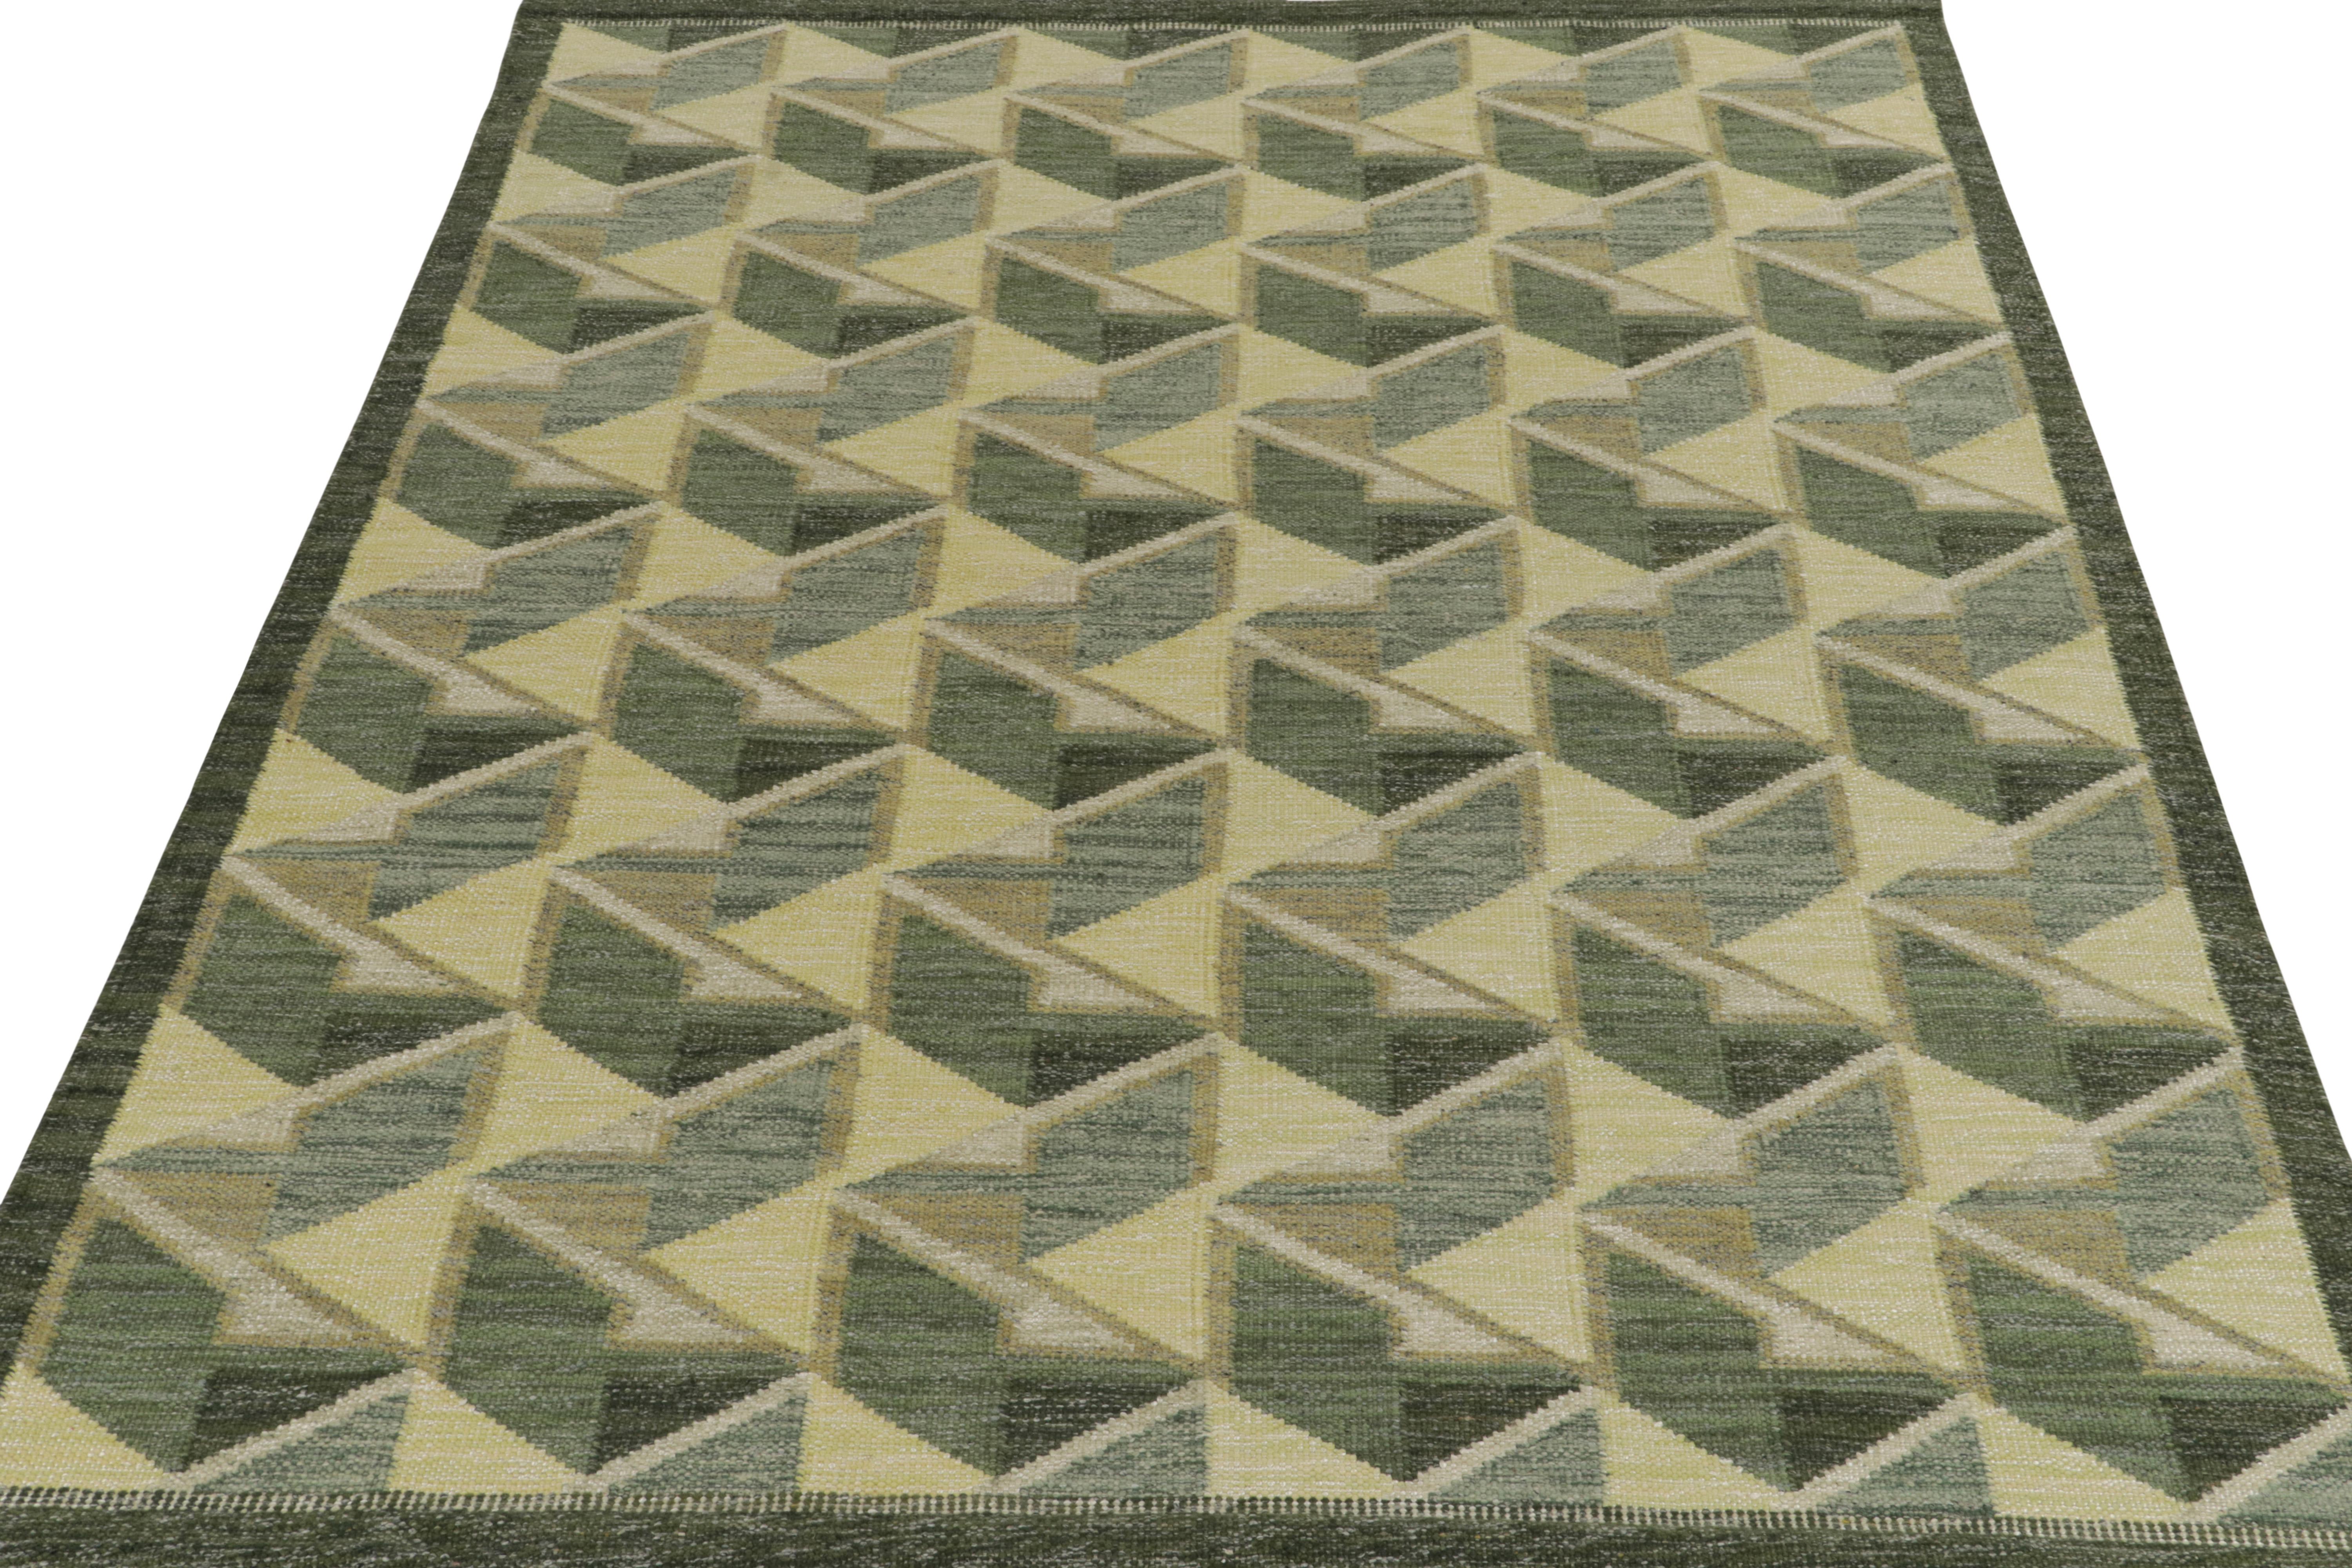 Le tapis kilim de style scandinave de Rug & Kilim fait partie de notre célèbre collection de tissage plat. Ce tapis 8x10 bénéficie de la finesse de l'esthétique suédoise avec un motif géométrique élégant qui donne une impression de 3D dans des tons